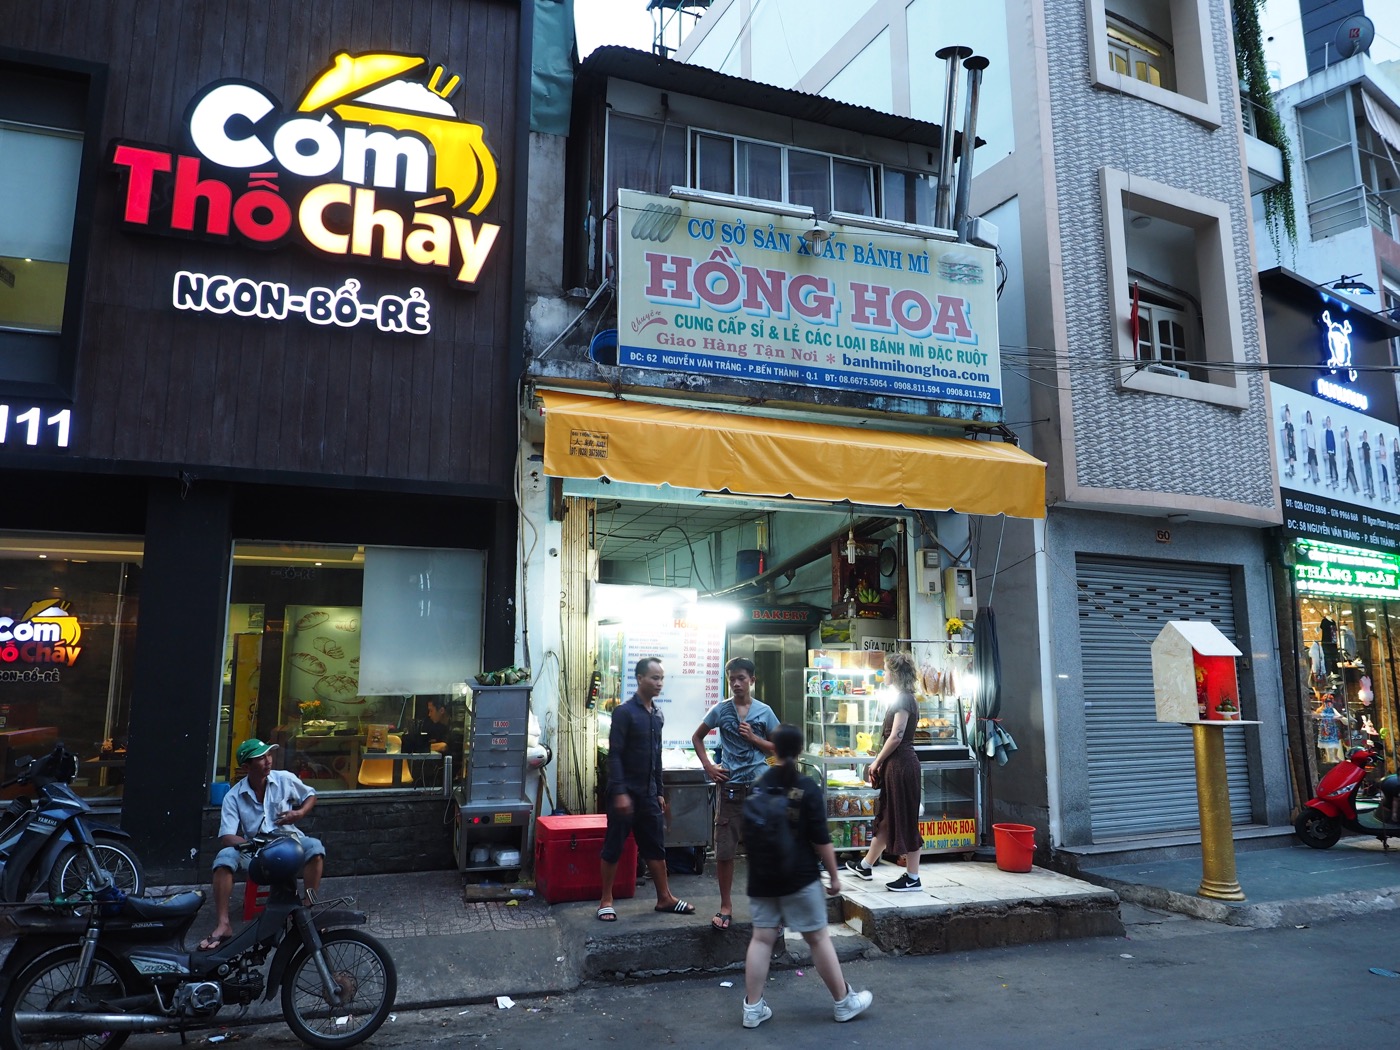 胡志明市美食 Bánh Mì Hồng Hoa 越南法包與路邊攤小吃 Quán Nước Mía 93 - 一口冒險 Bitesized Adventure